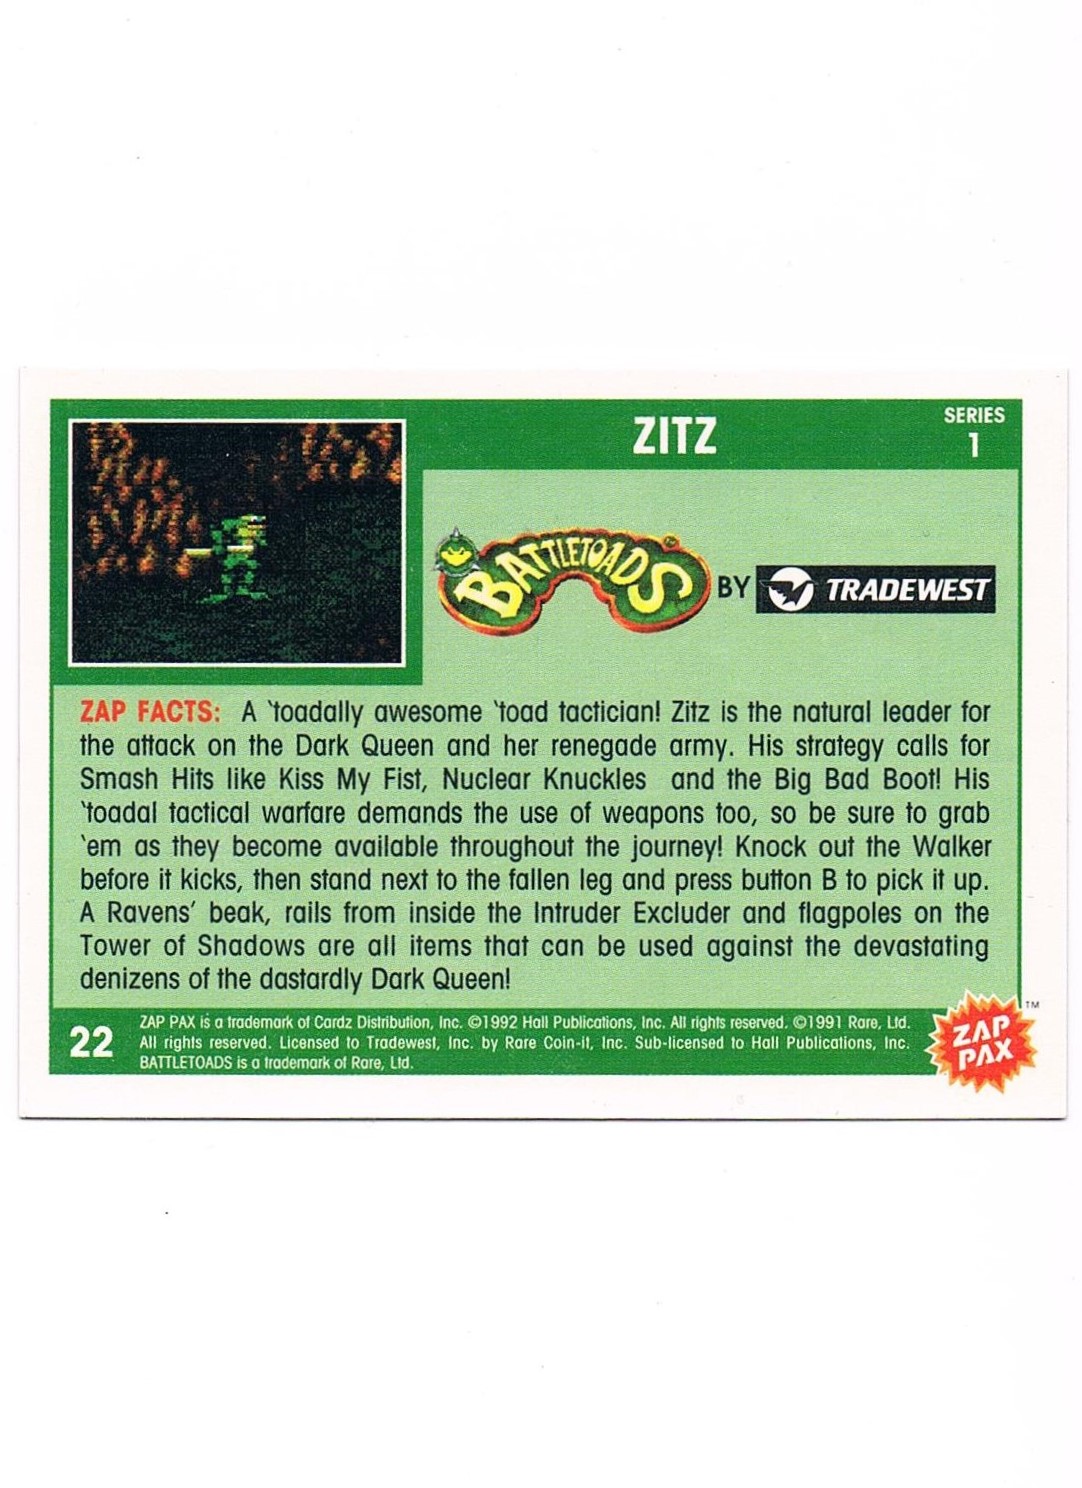 Zap Pax Nr. 22 - Battletoads Zitz 2